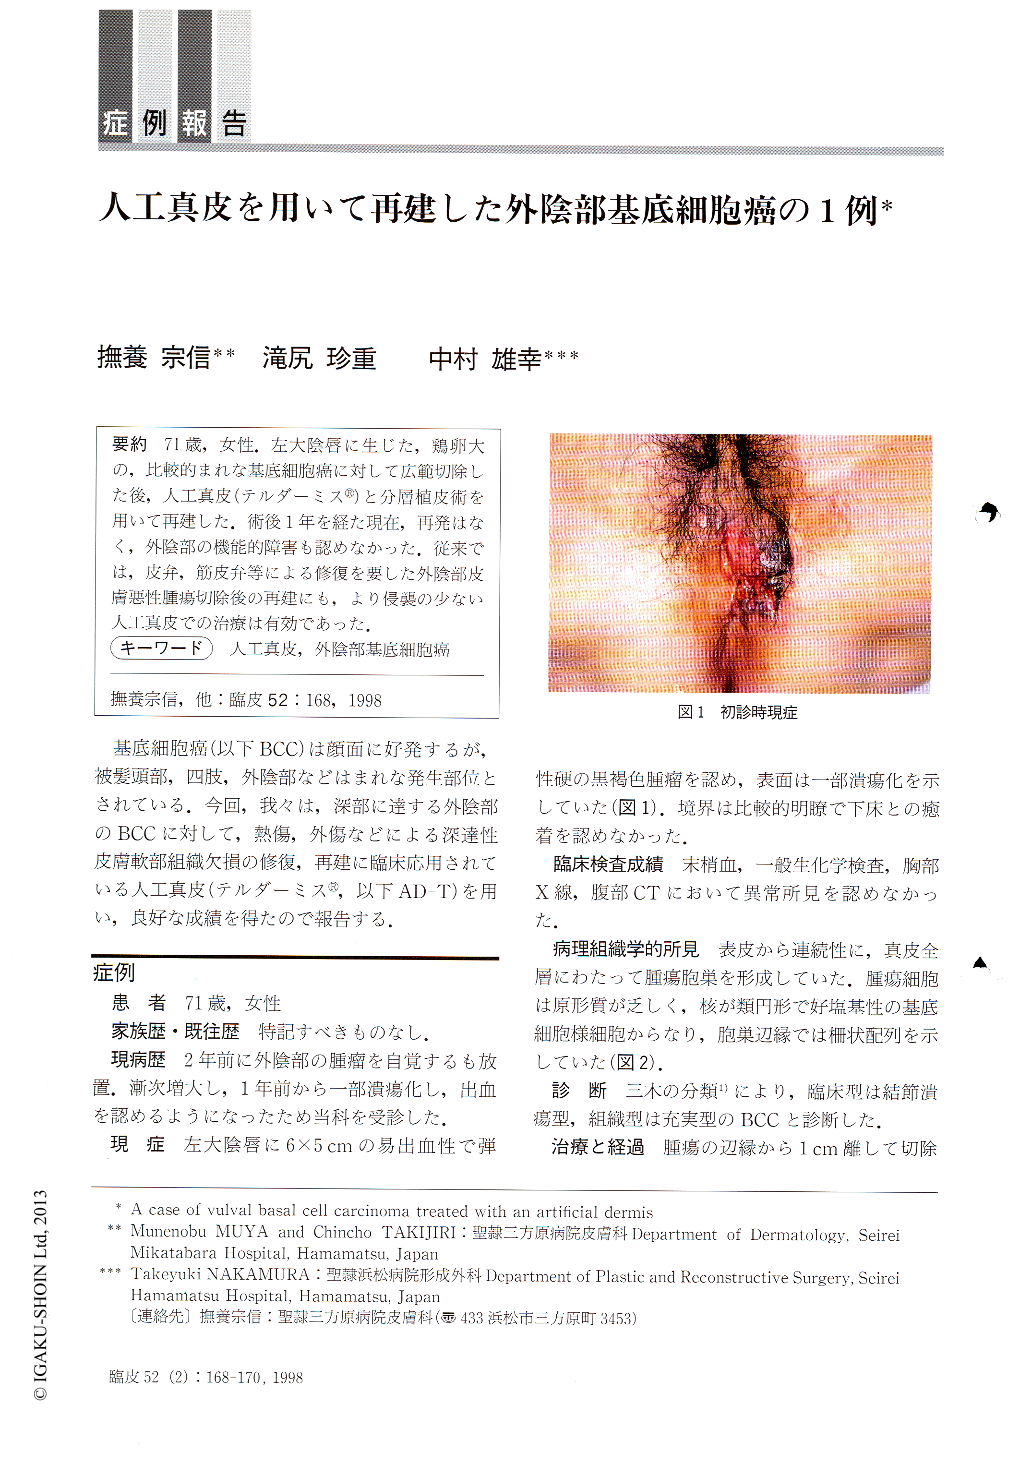 人工真皮を用いて再建した外陰部基底細胞癌の1例 臨床皮膚科 52巻2号 医書 Jp